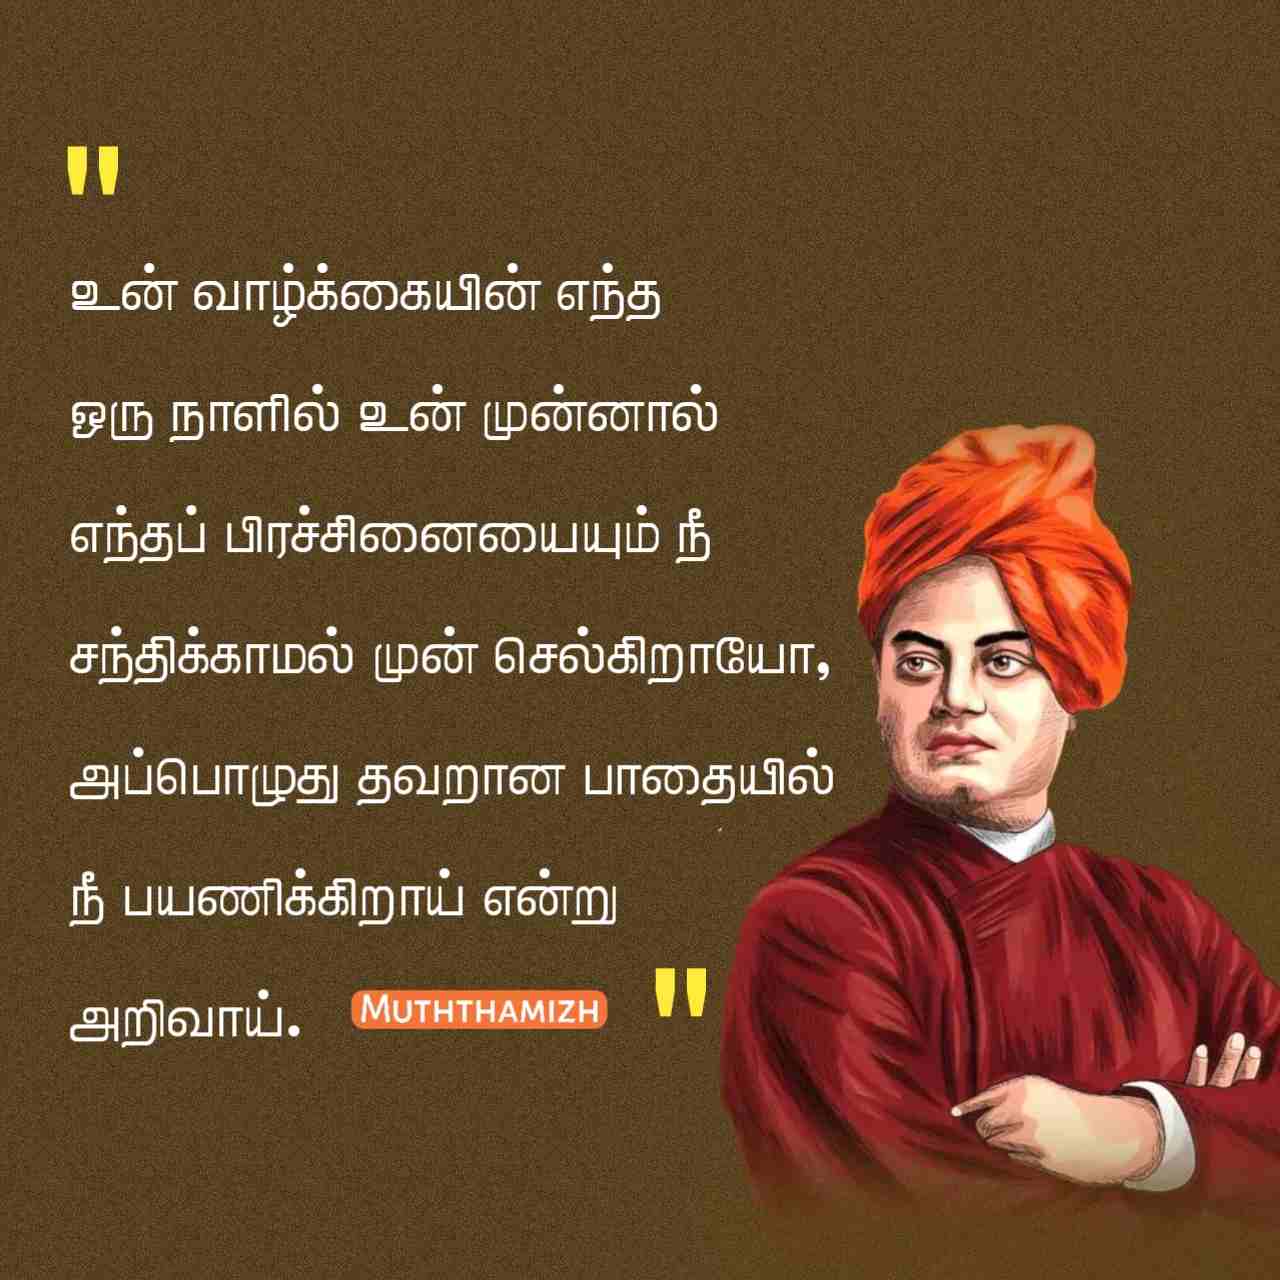 swami vivekananda quotes in tamil